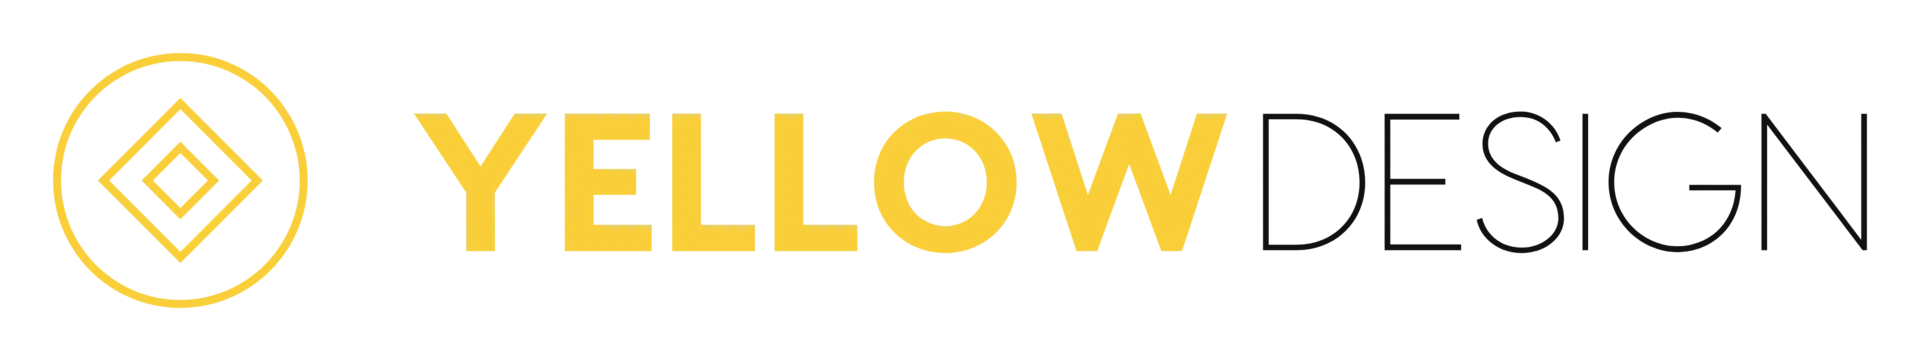 Yellowdesign